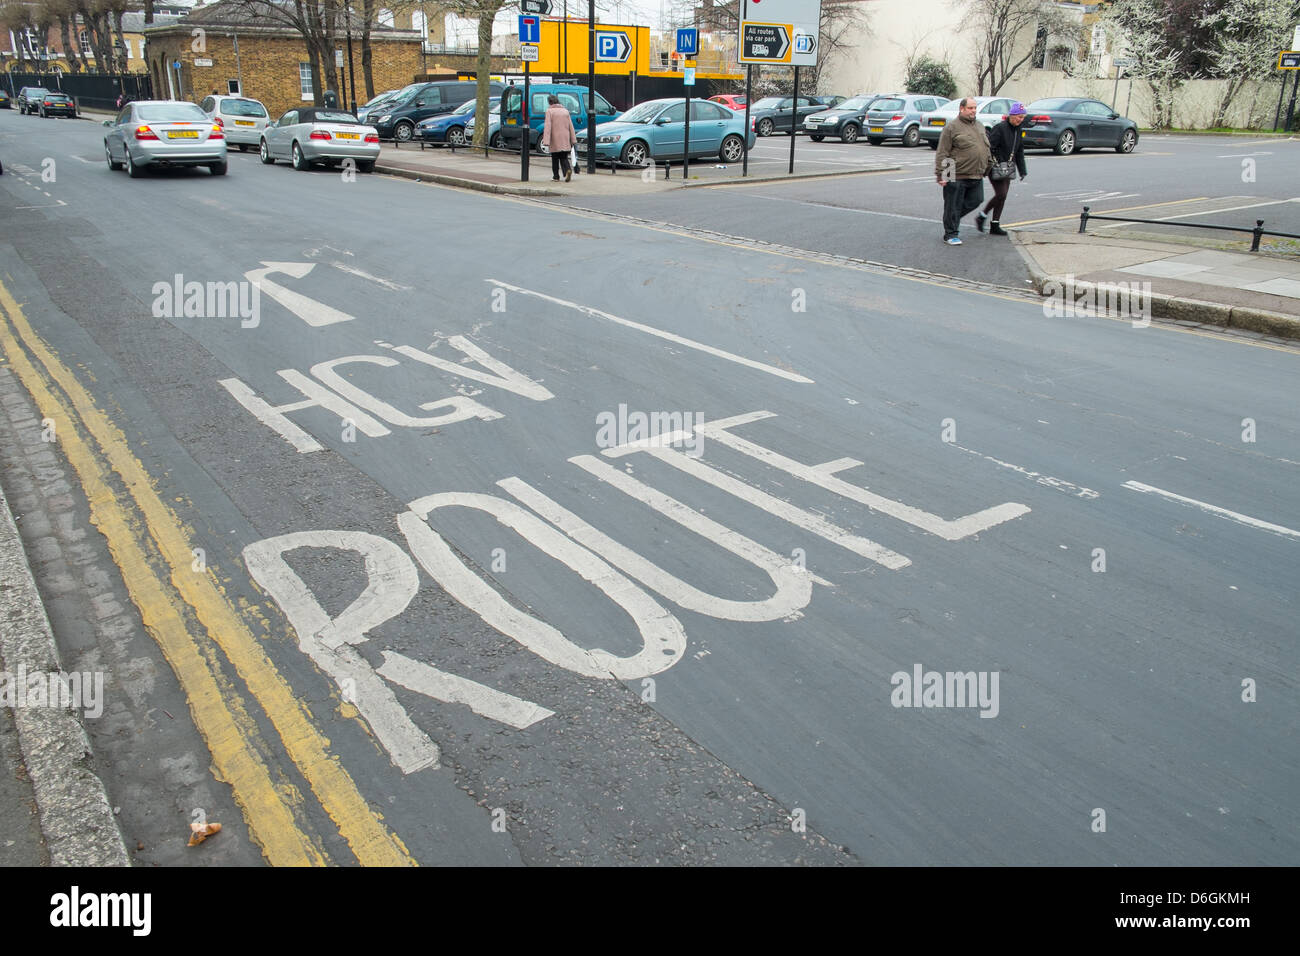 HGV road marking in London UK Stock Photo